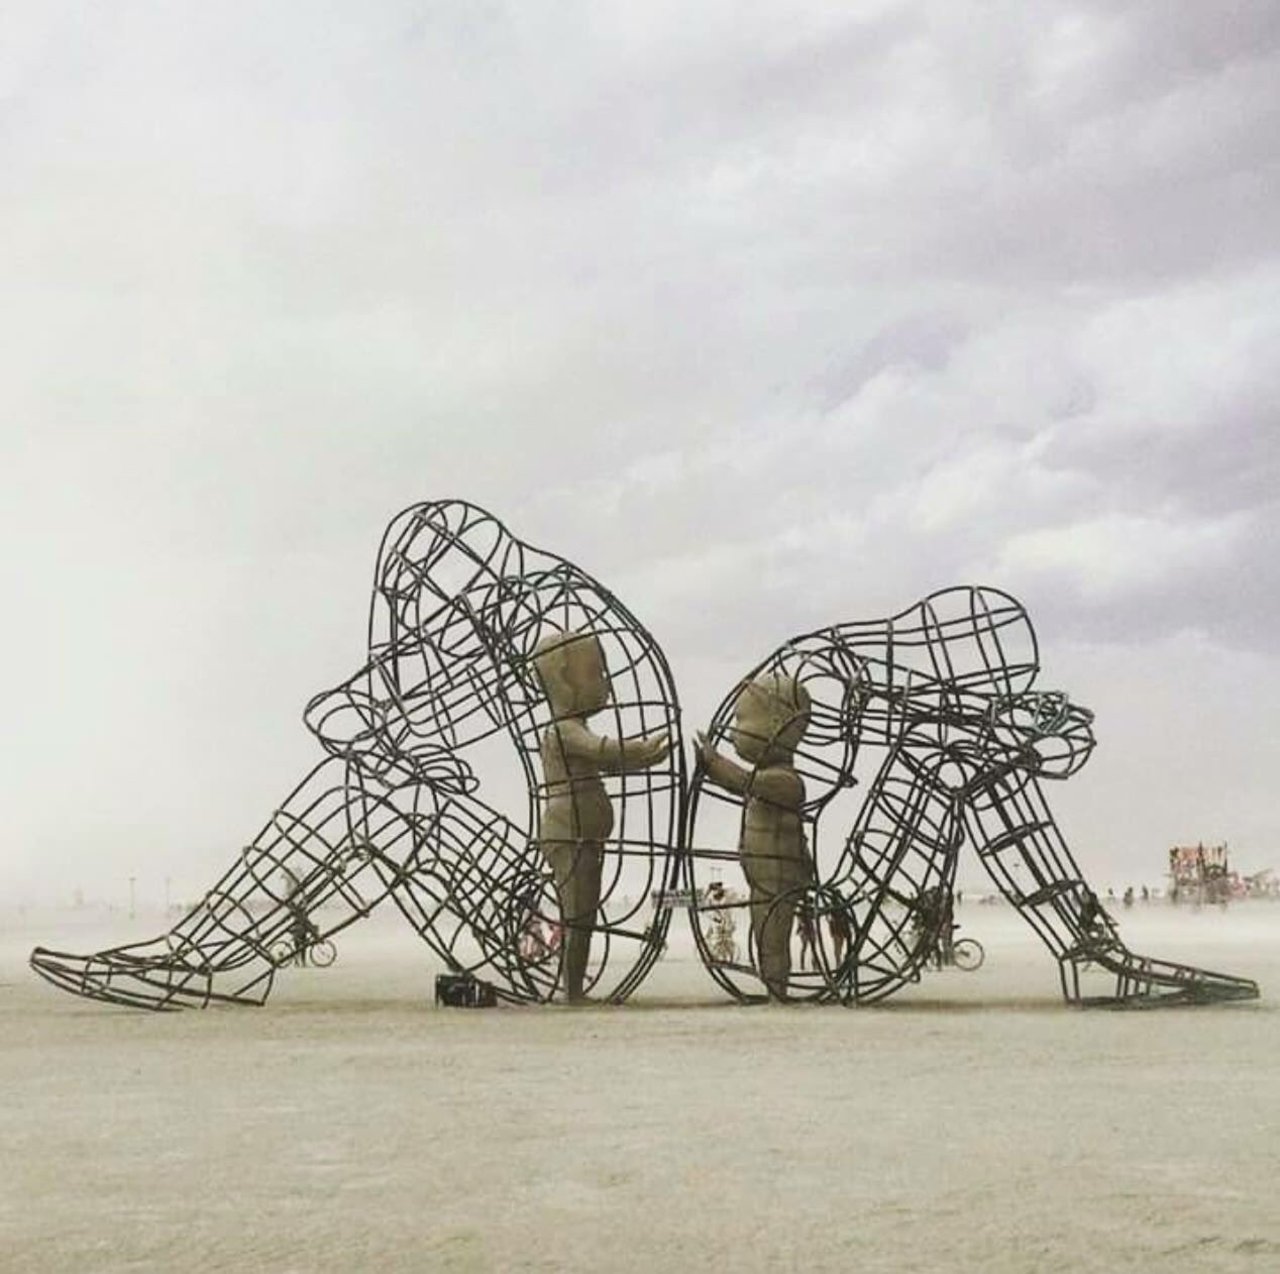 ‘Love’ by A.Milov Sculpture for the Burning Man Festival #streetart Vía @QueGraffiti  #desighthinking #StreetArt #graffiti https://t.co/TacBRsUpCV